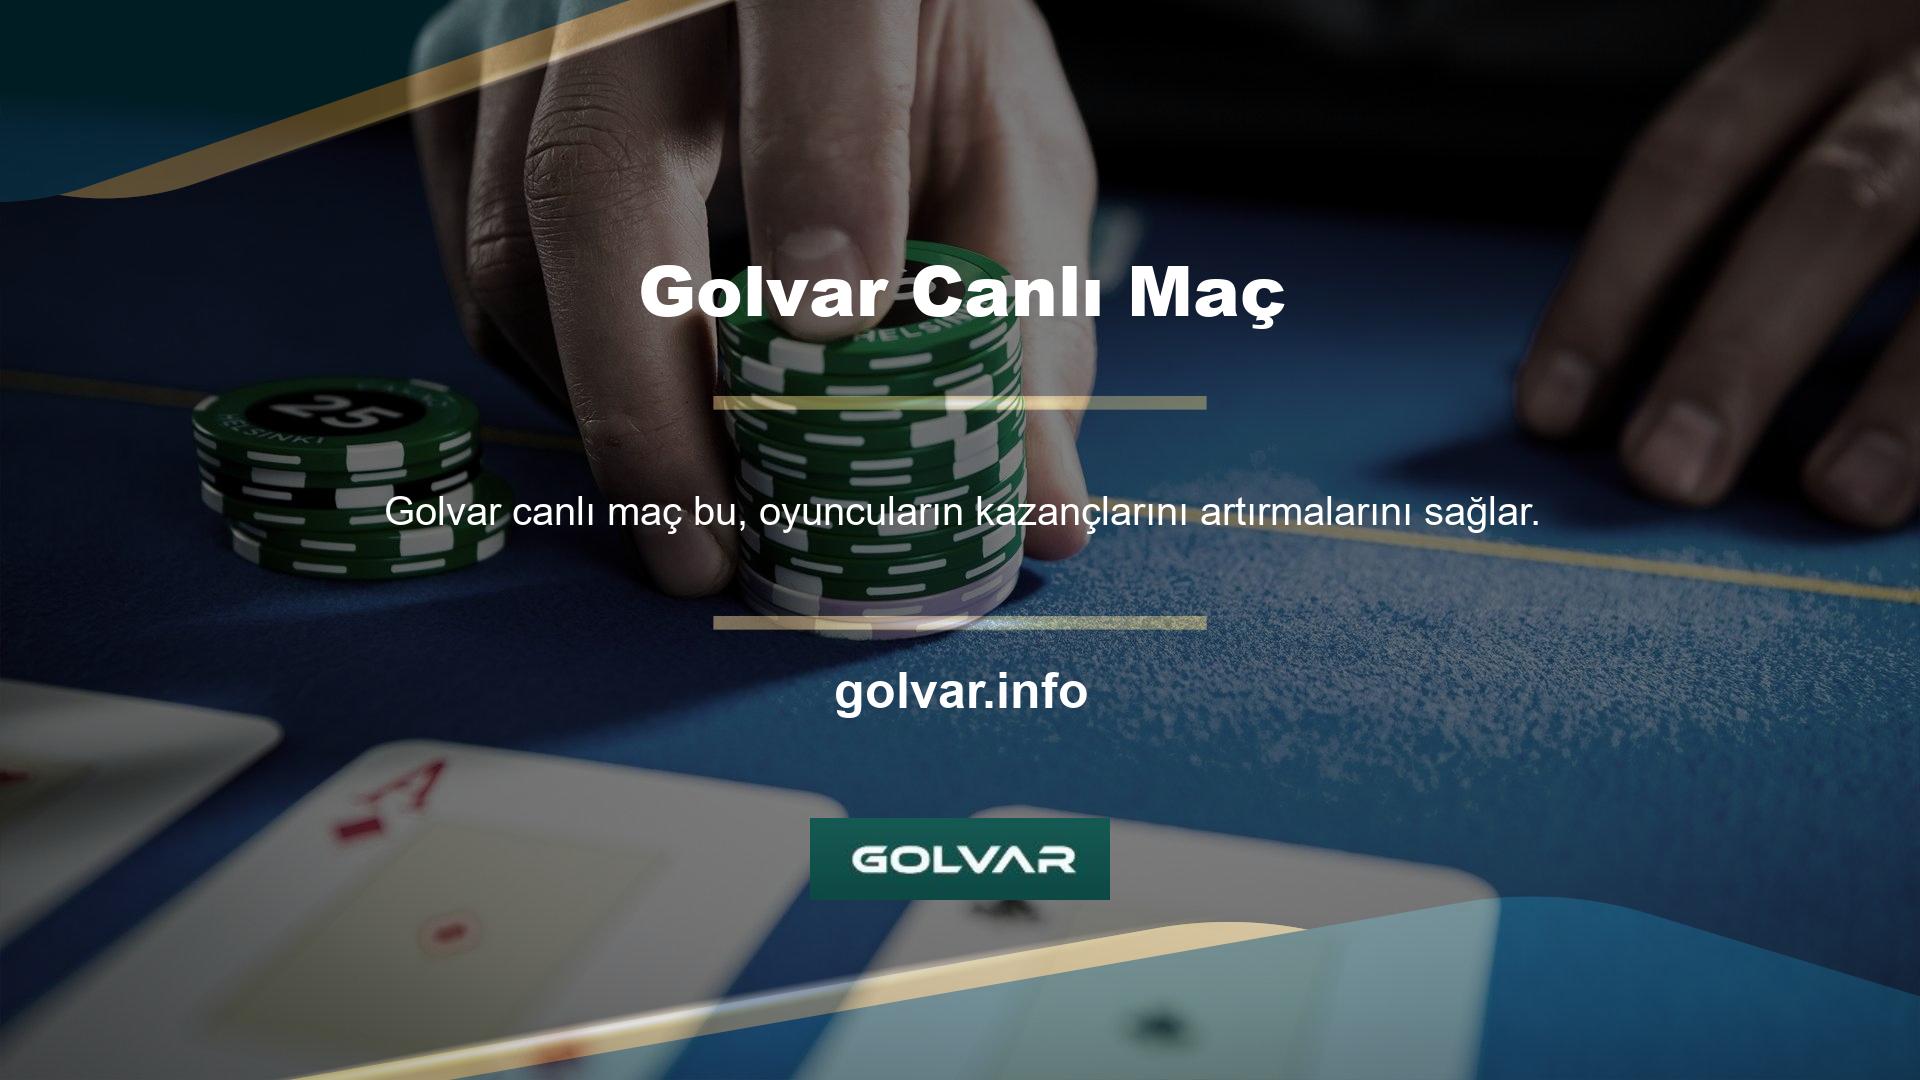 ' Golvar, canlı maç yayını sağlayan en kazançlı bahis siteleri arasında yer alıyor